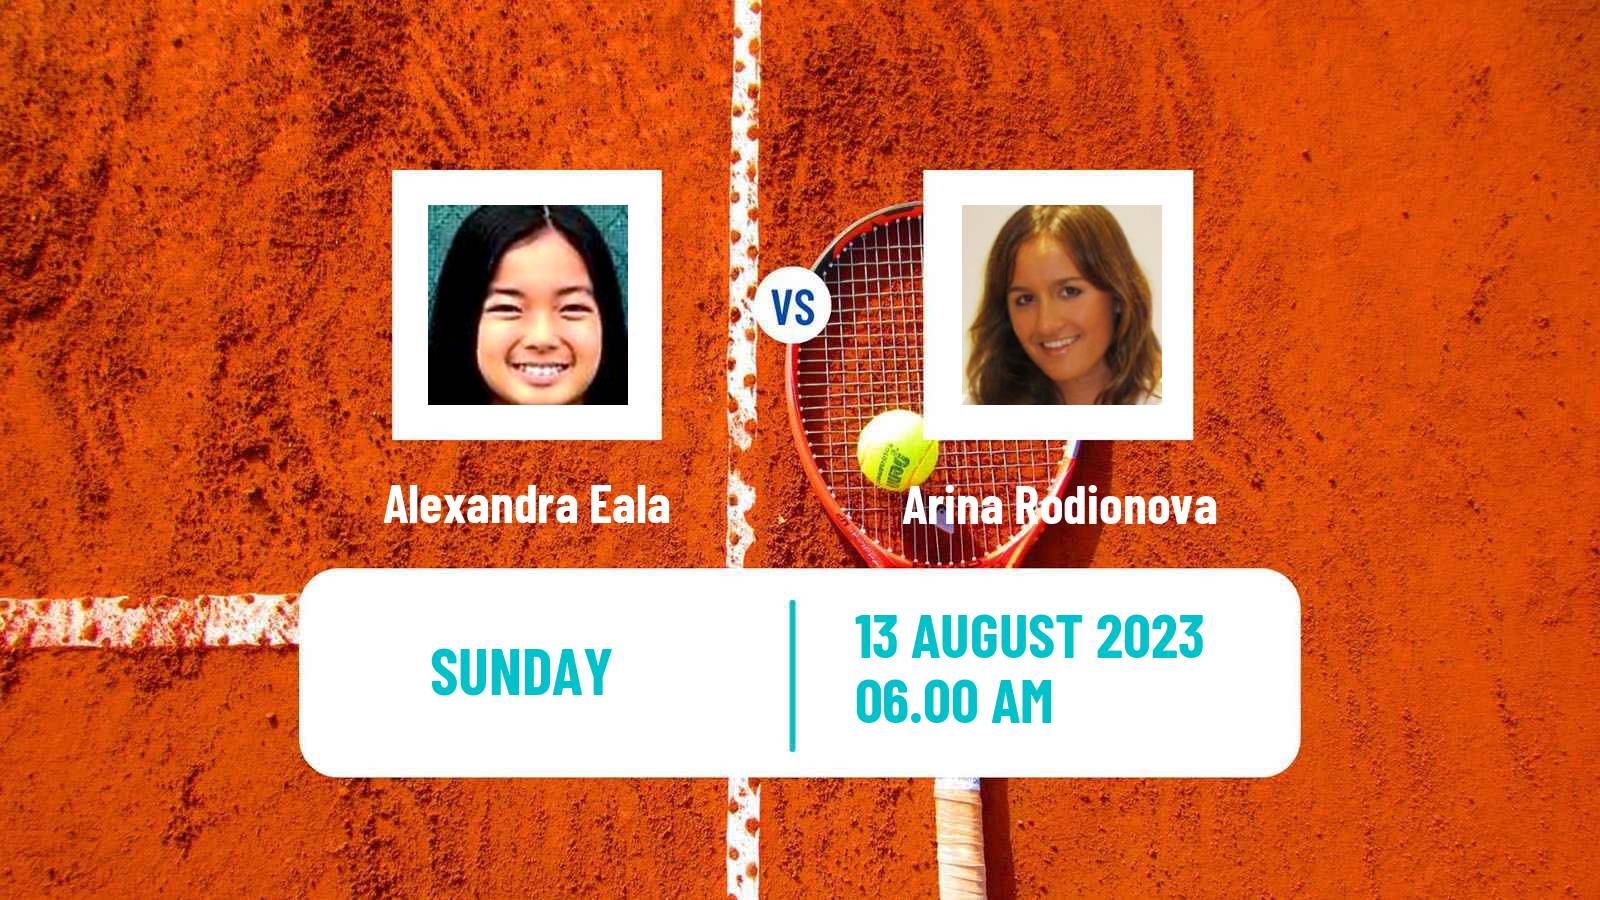 Tennis ITF W25 Roehampton 2 Women Alexandra Eala - Arina Rodionova